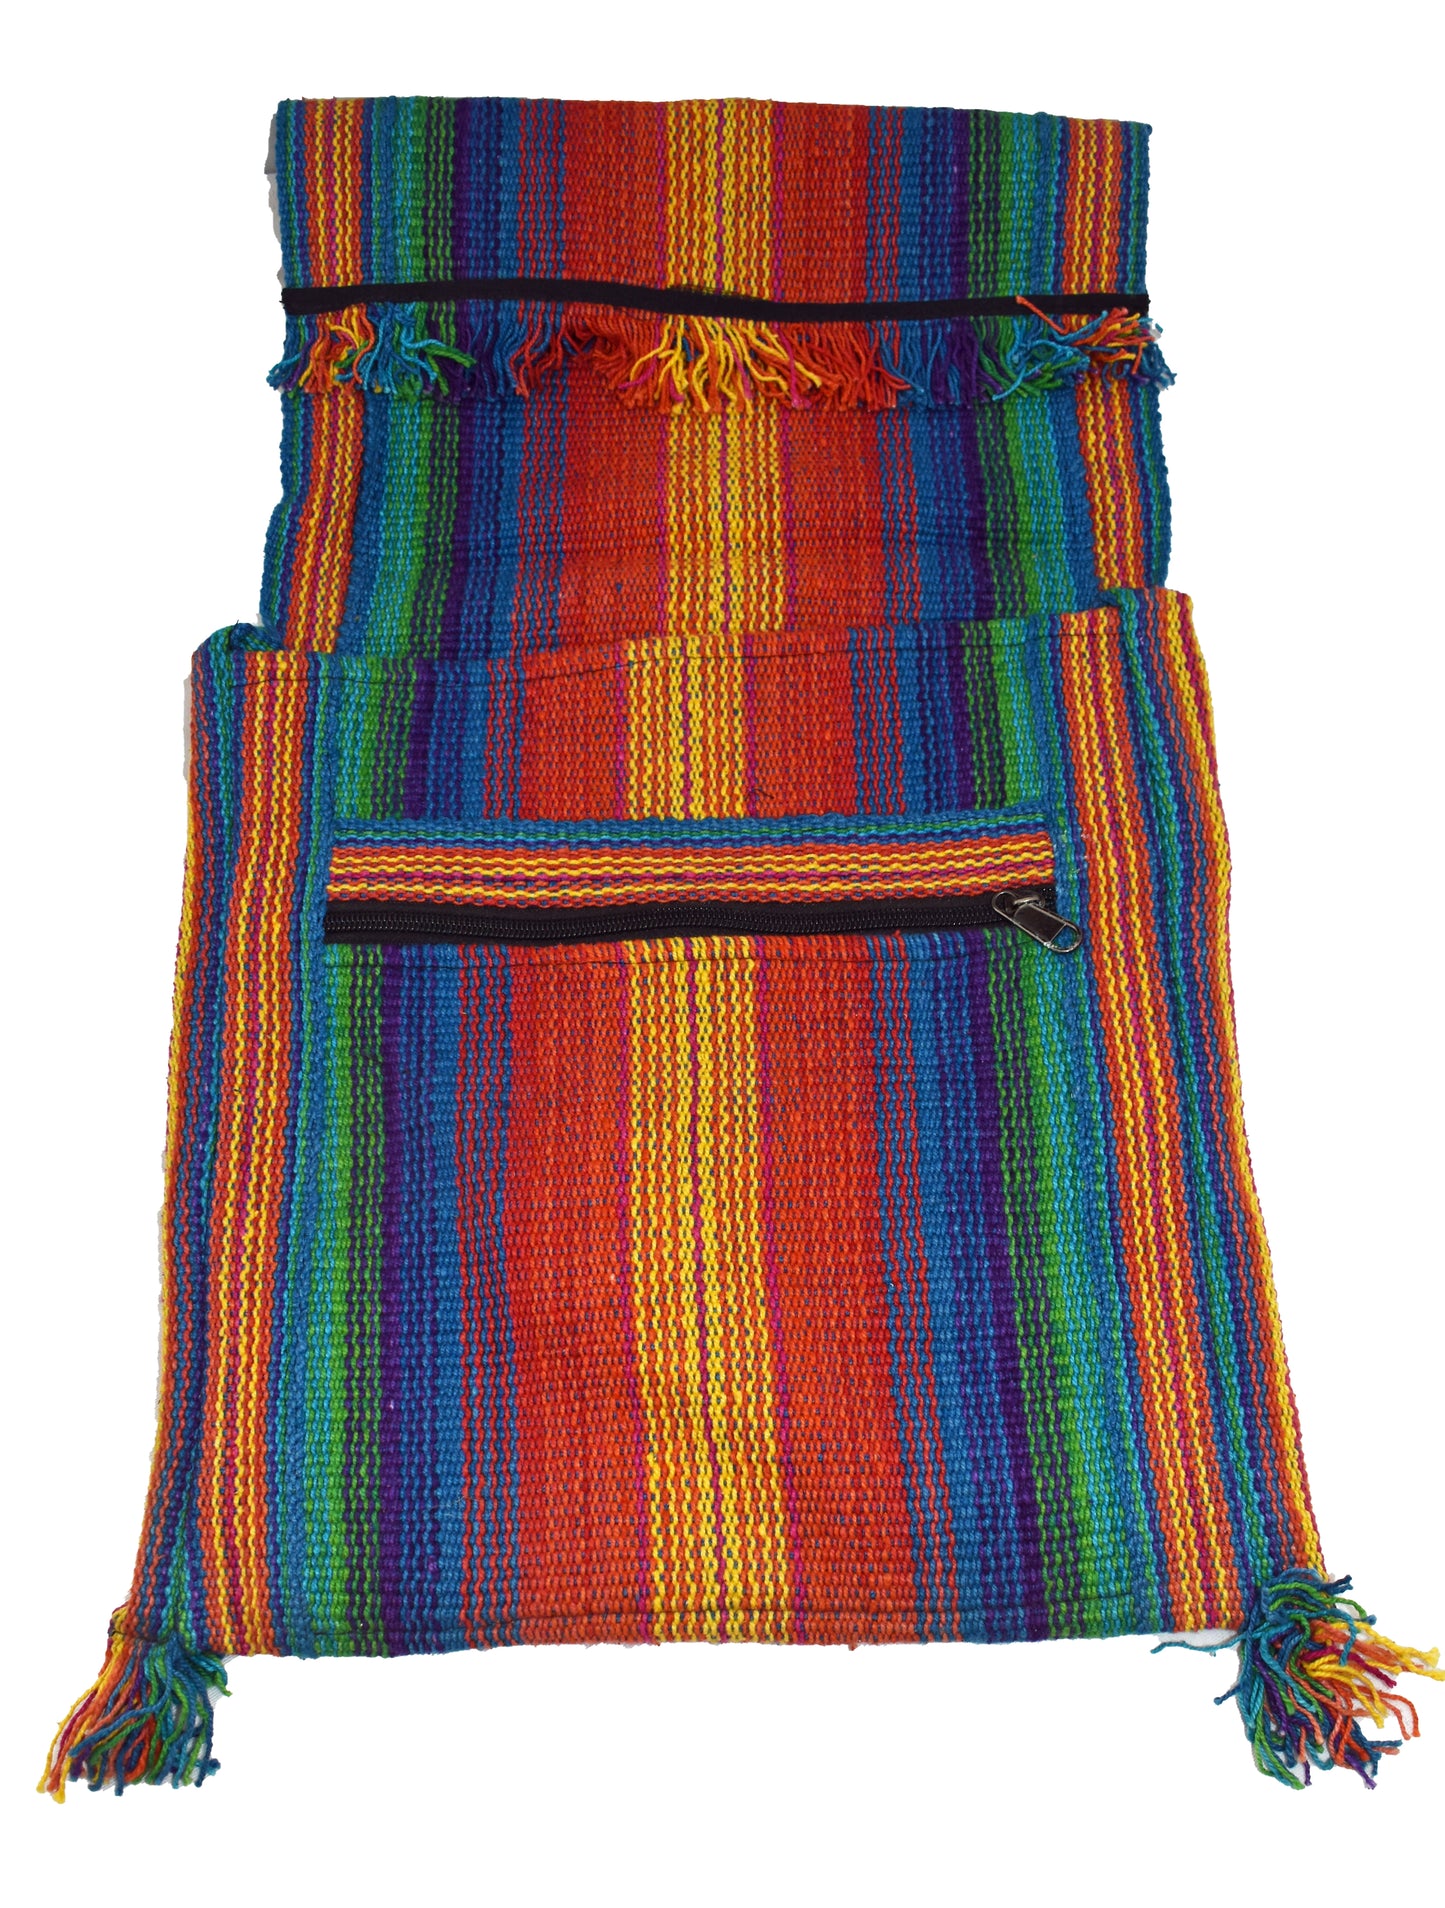 Tibetan Woven Satchel Bag